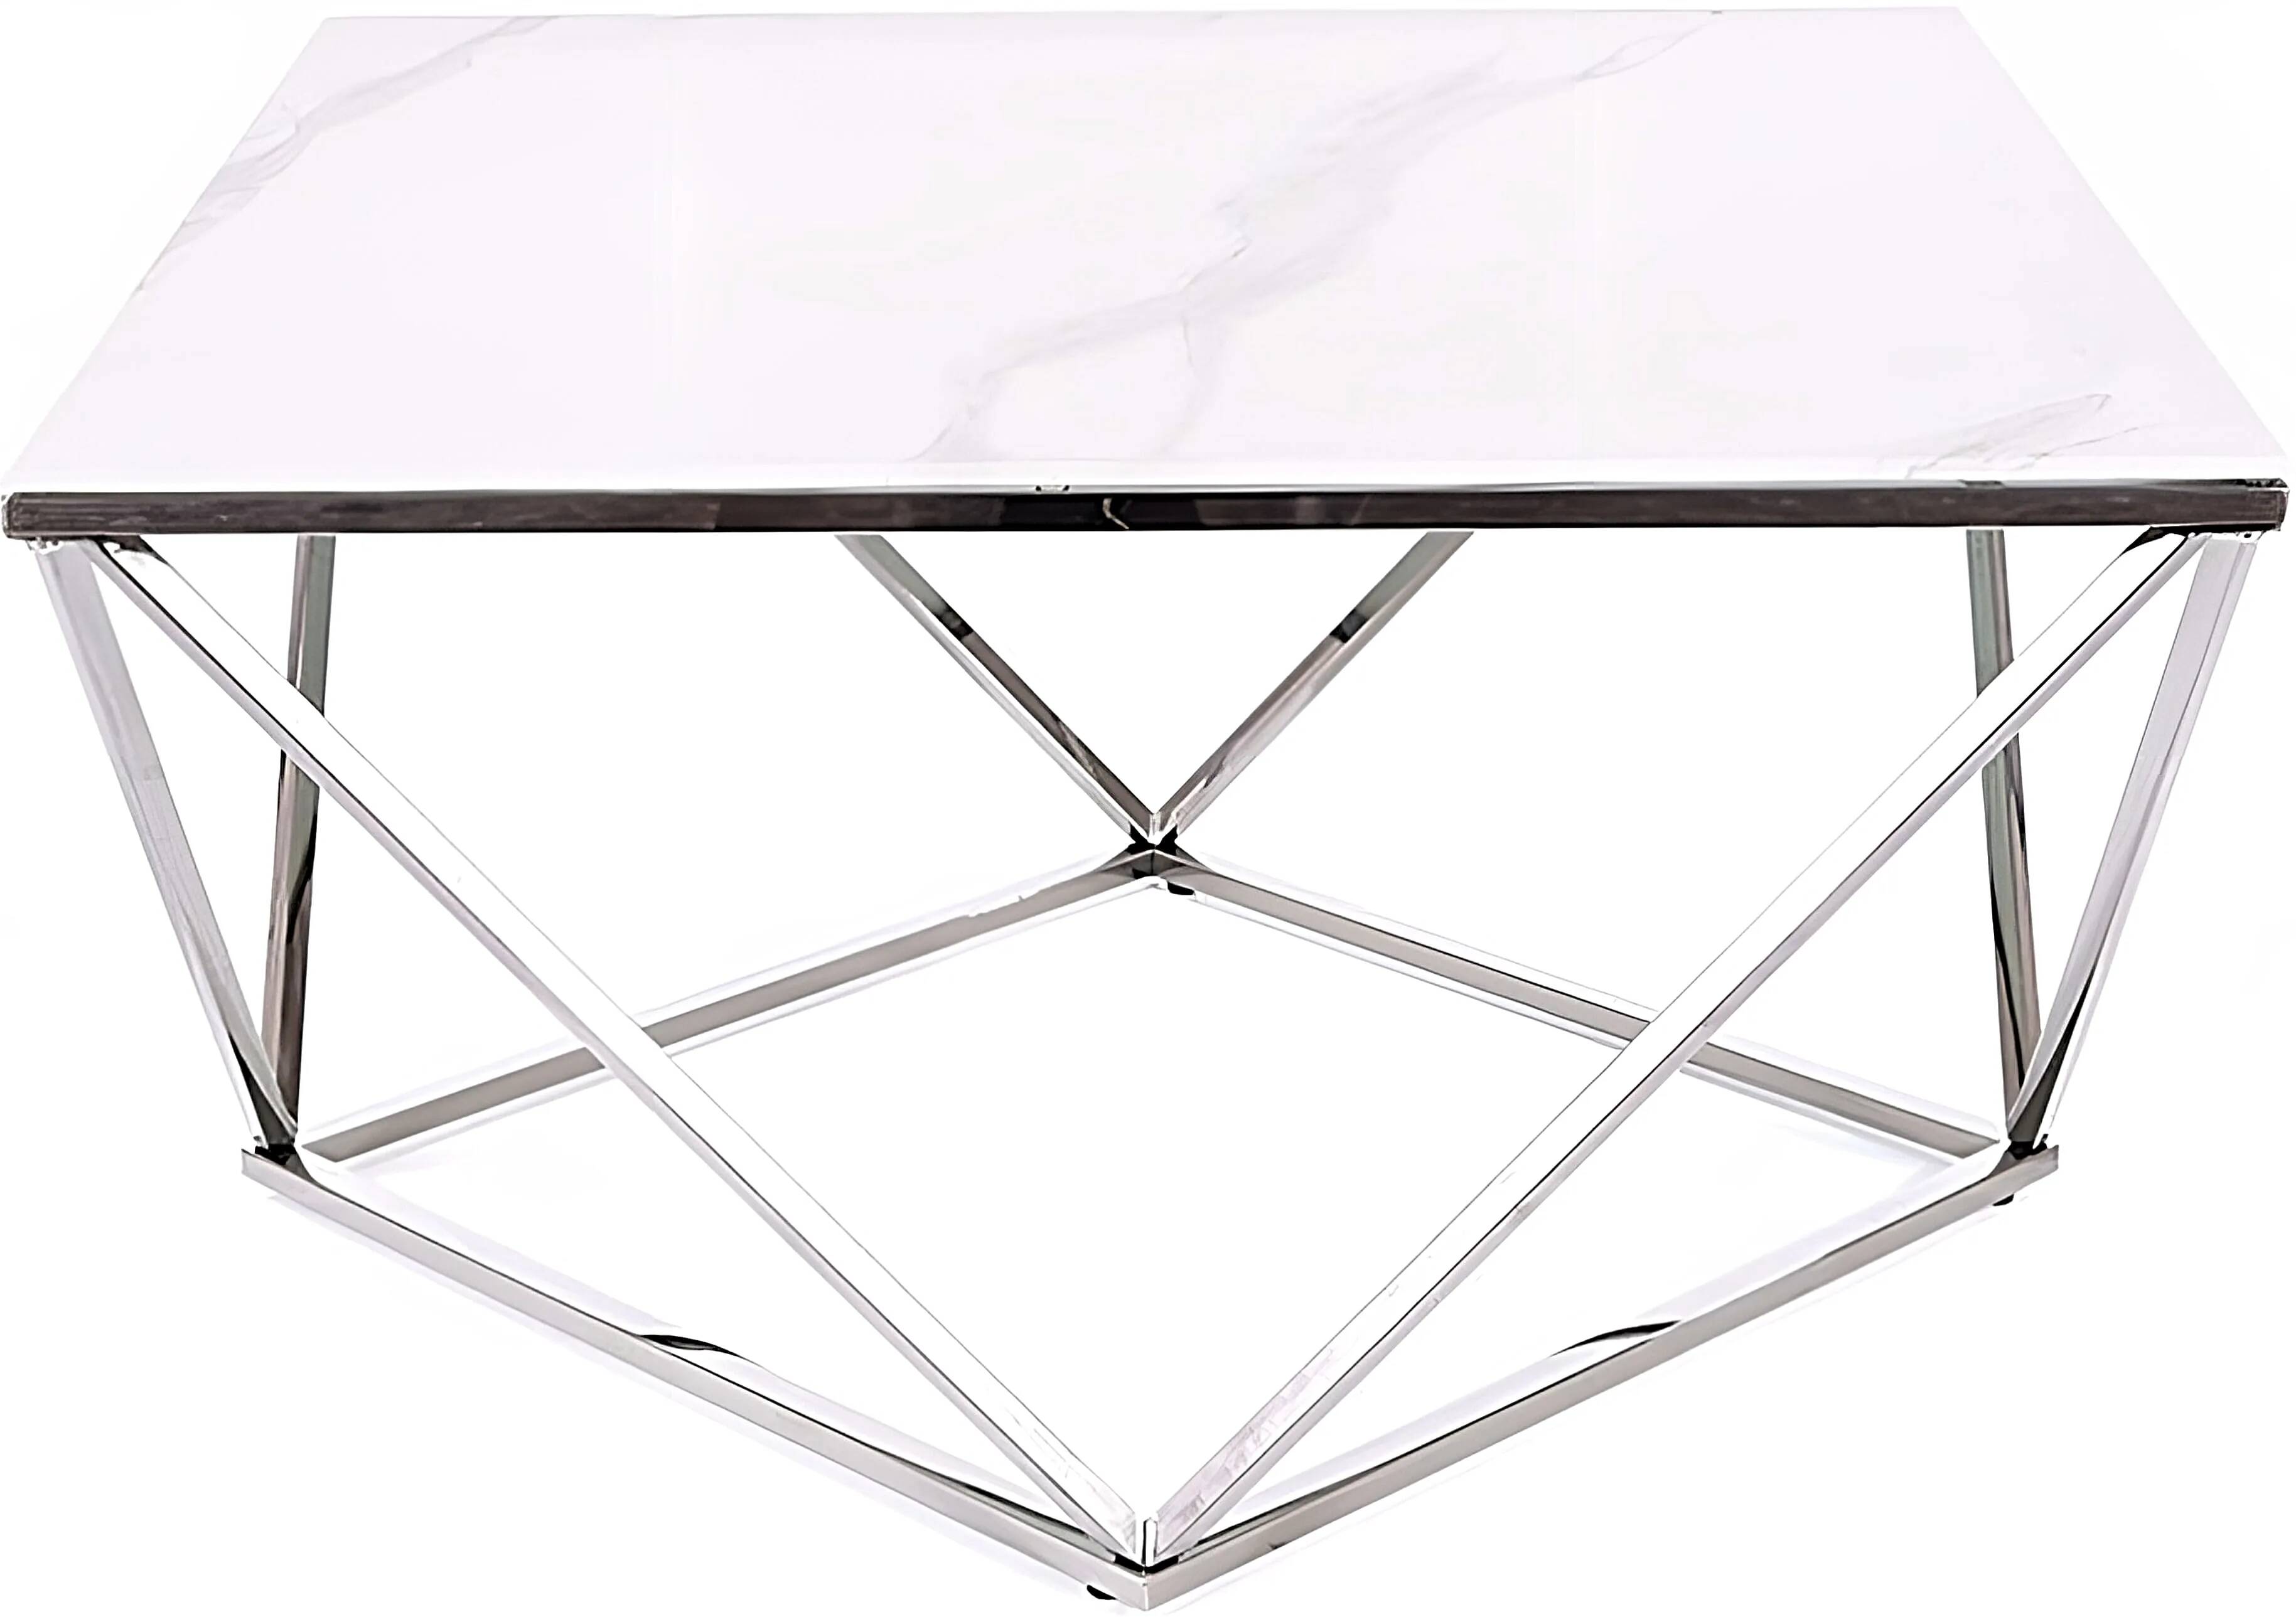 Table basse design en verre aspect marbre blanc et acier chromé